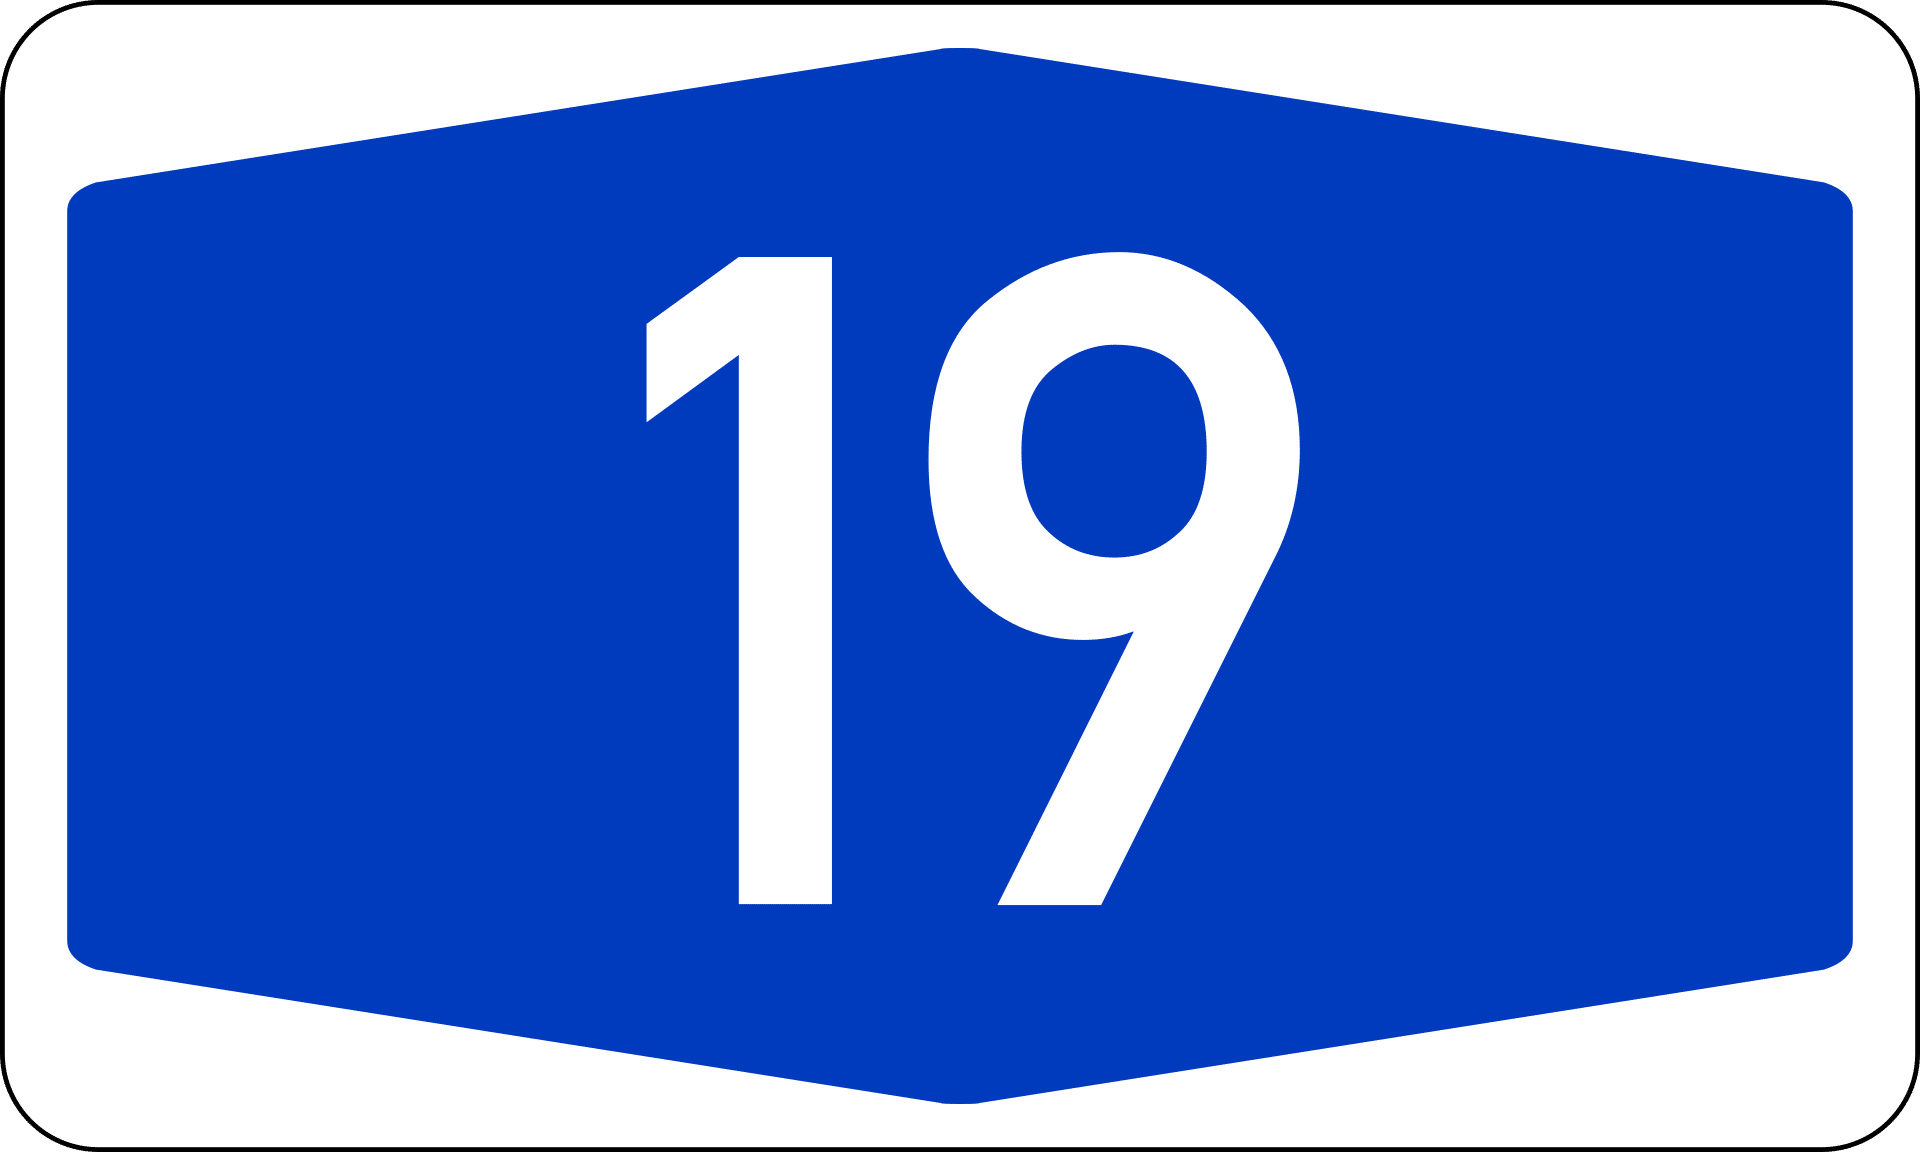 A19